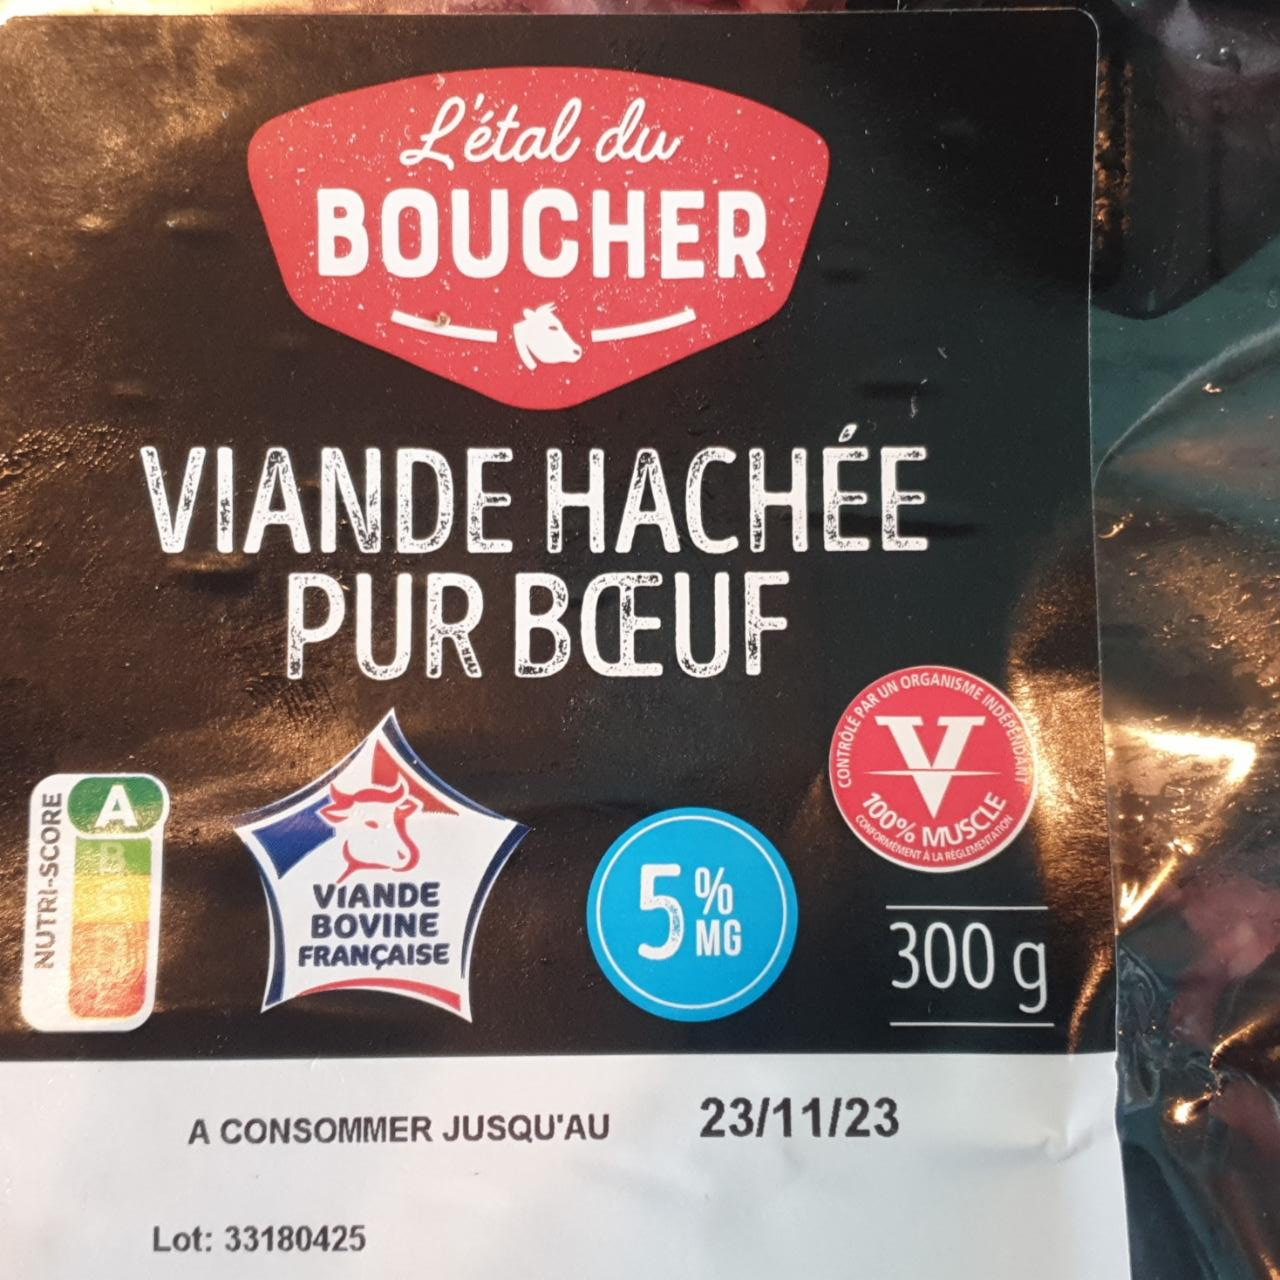 Fotografie - Viande hachée pur bœuf 5% MG L'étal du Boucher